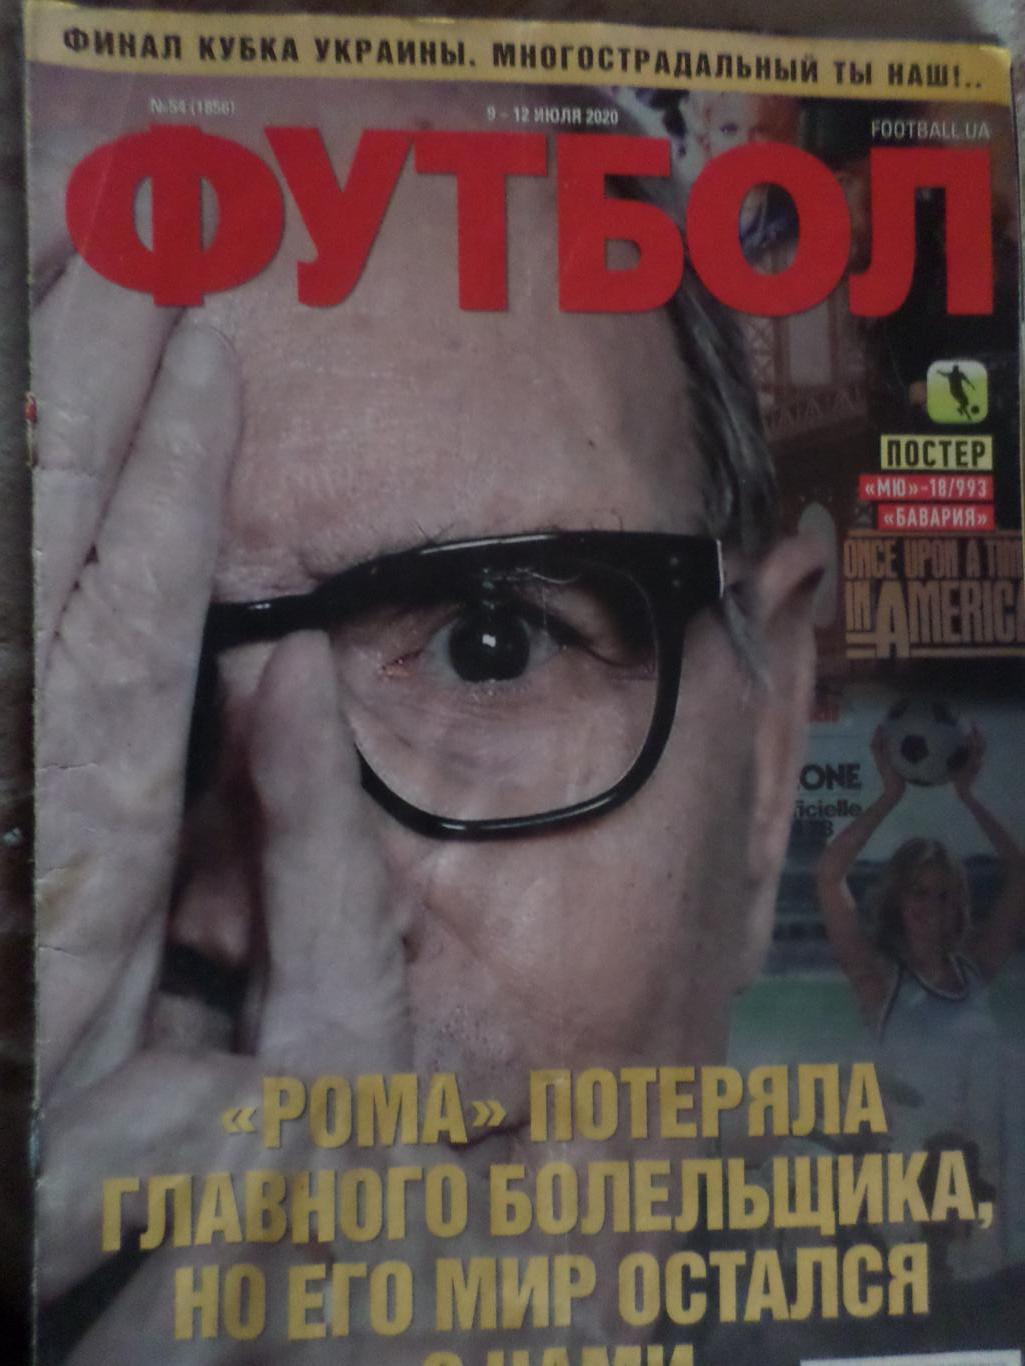 Еженедельник Футбол, Киев, № 54 2020 год